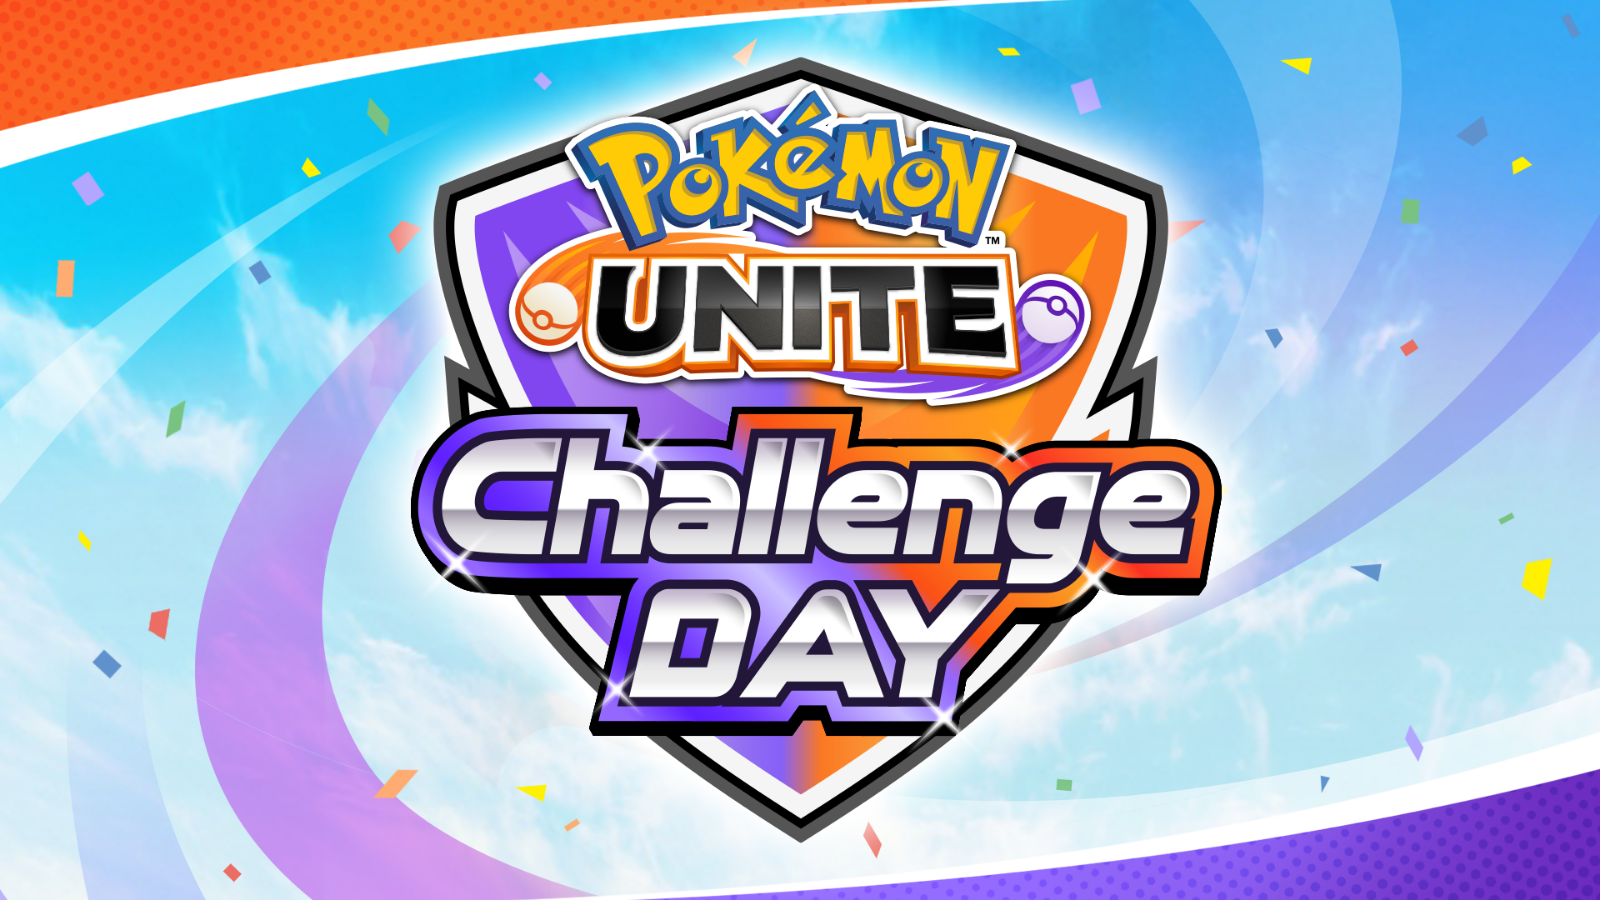 【大会情報】【チーム&個人参加制】Under 22歳限定 Pokémon UNITE Challenge DAY 05.13 スイスドロー形式【2023年5月13日】